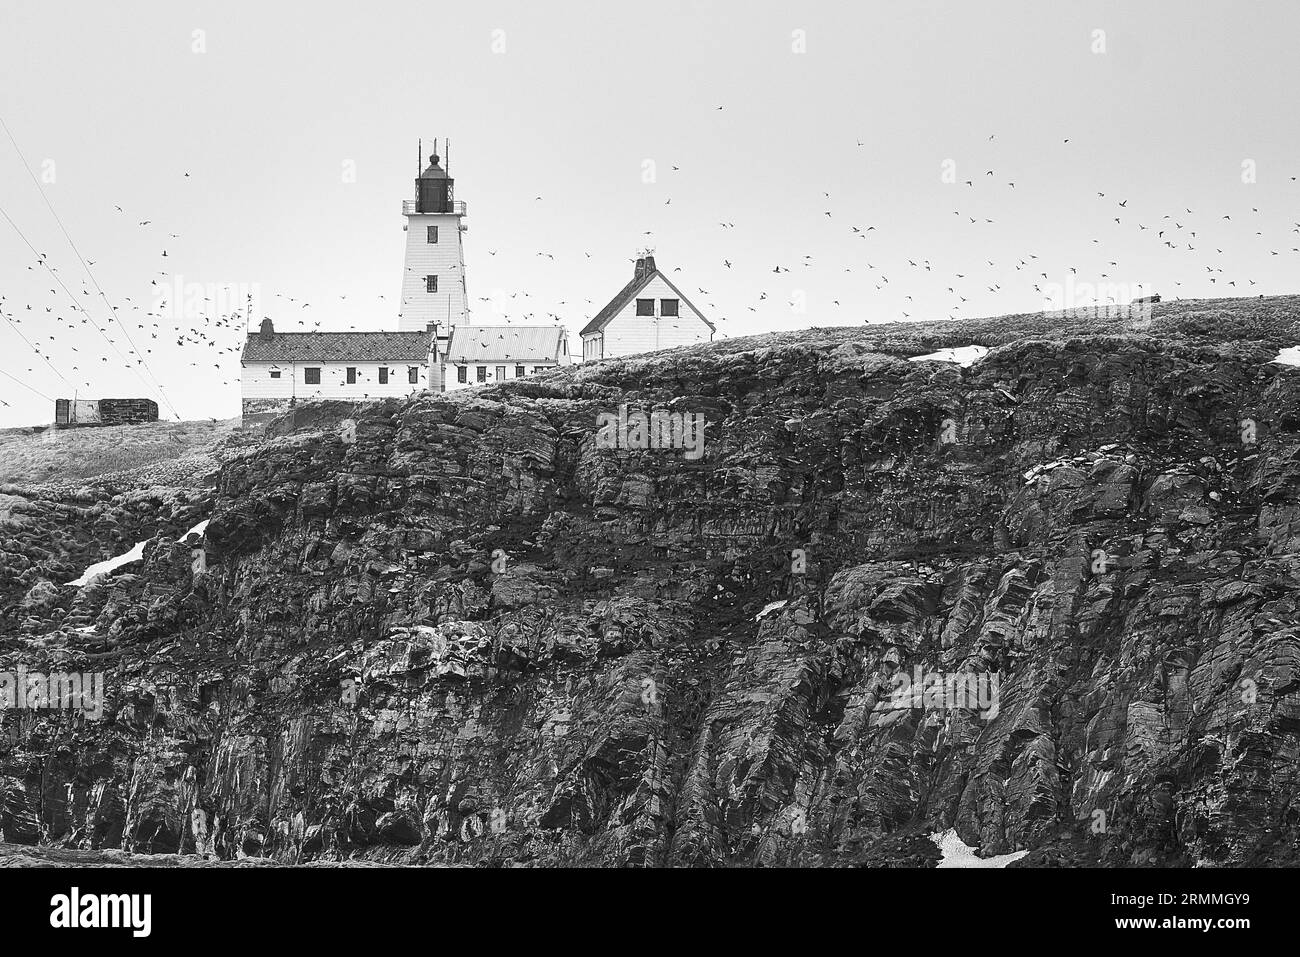 Photo en noir et blanc du phare en bois de Vardø, construit en 1896 sur l'île arctique de Hornøya, entouré d'Un grand troupeau d'oiseaux marins. Norvège Banque D'Images